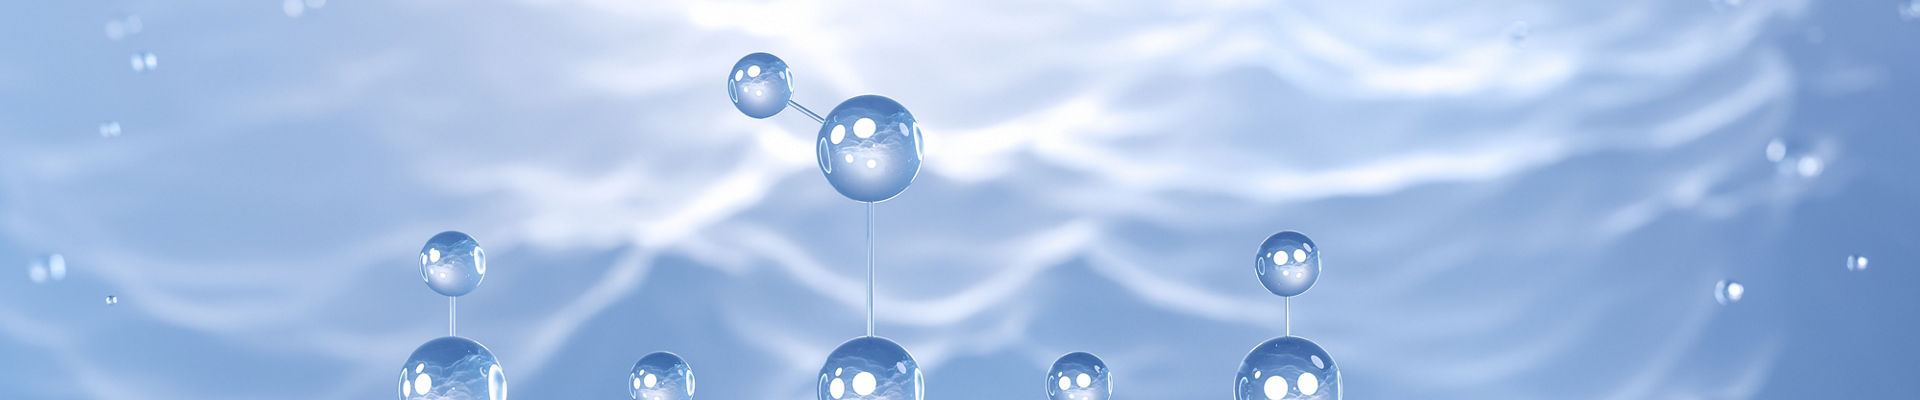 Agua azul con burbujas 